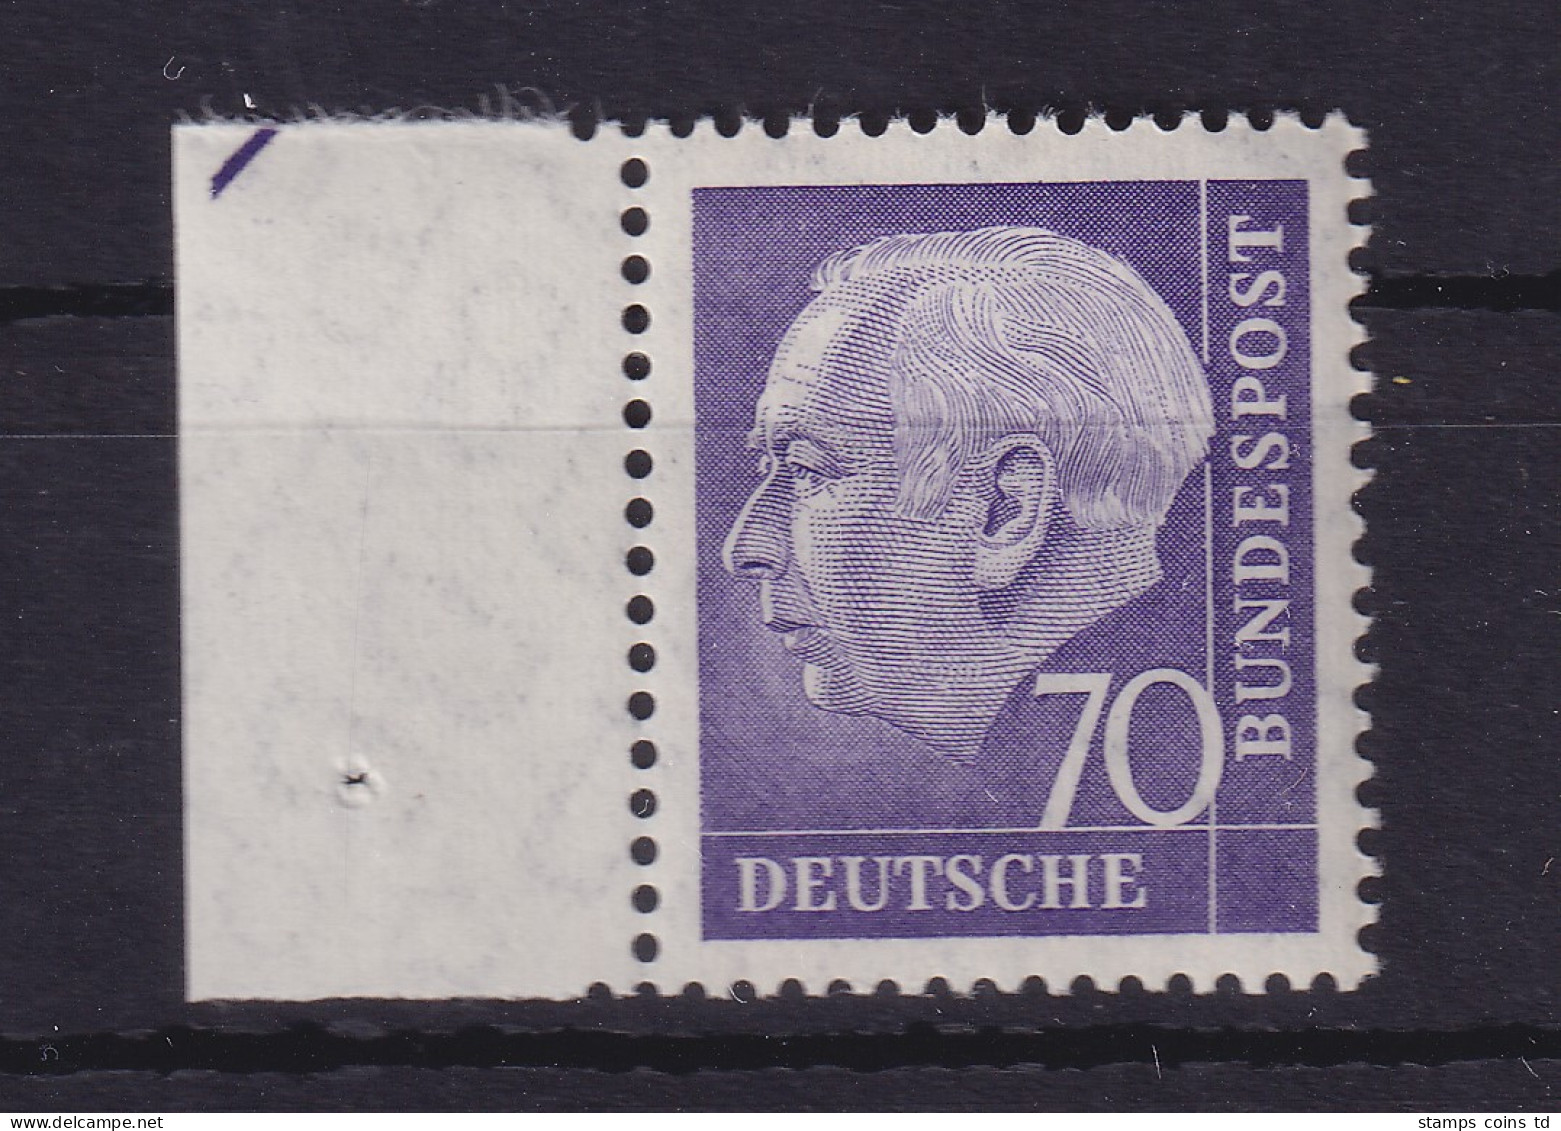 Bundesrepublik 1957 Theodor Heuss 70 Pf Mi.-Nr. 263 X V Randstück Postfrisch ** - Unused Stamps